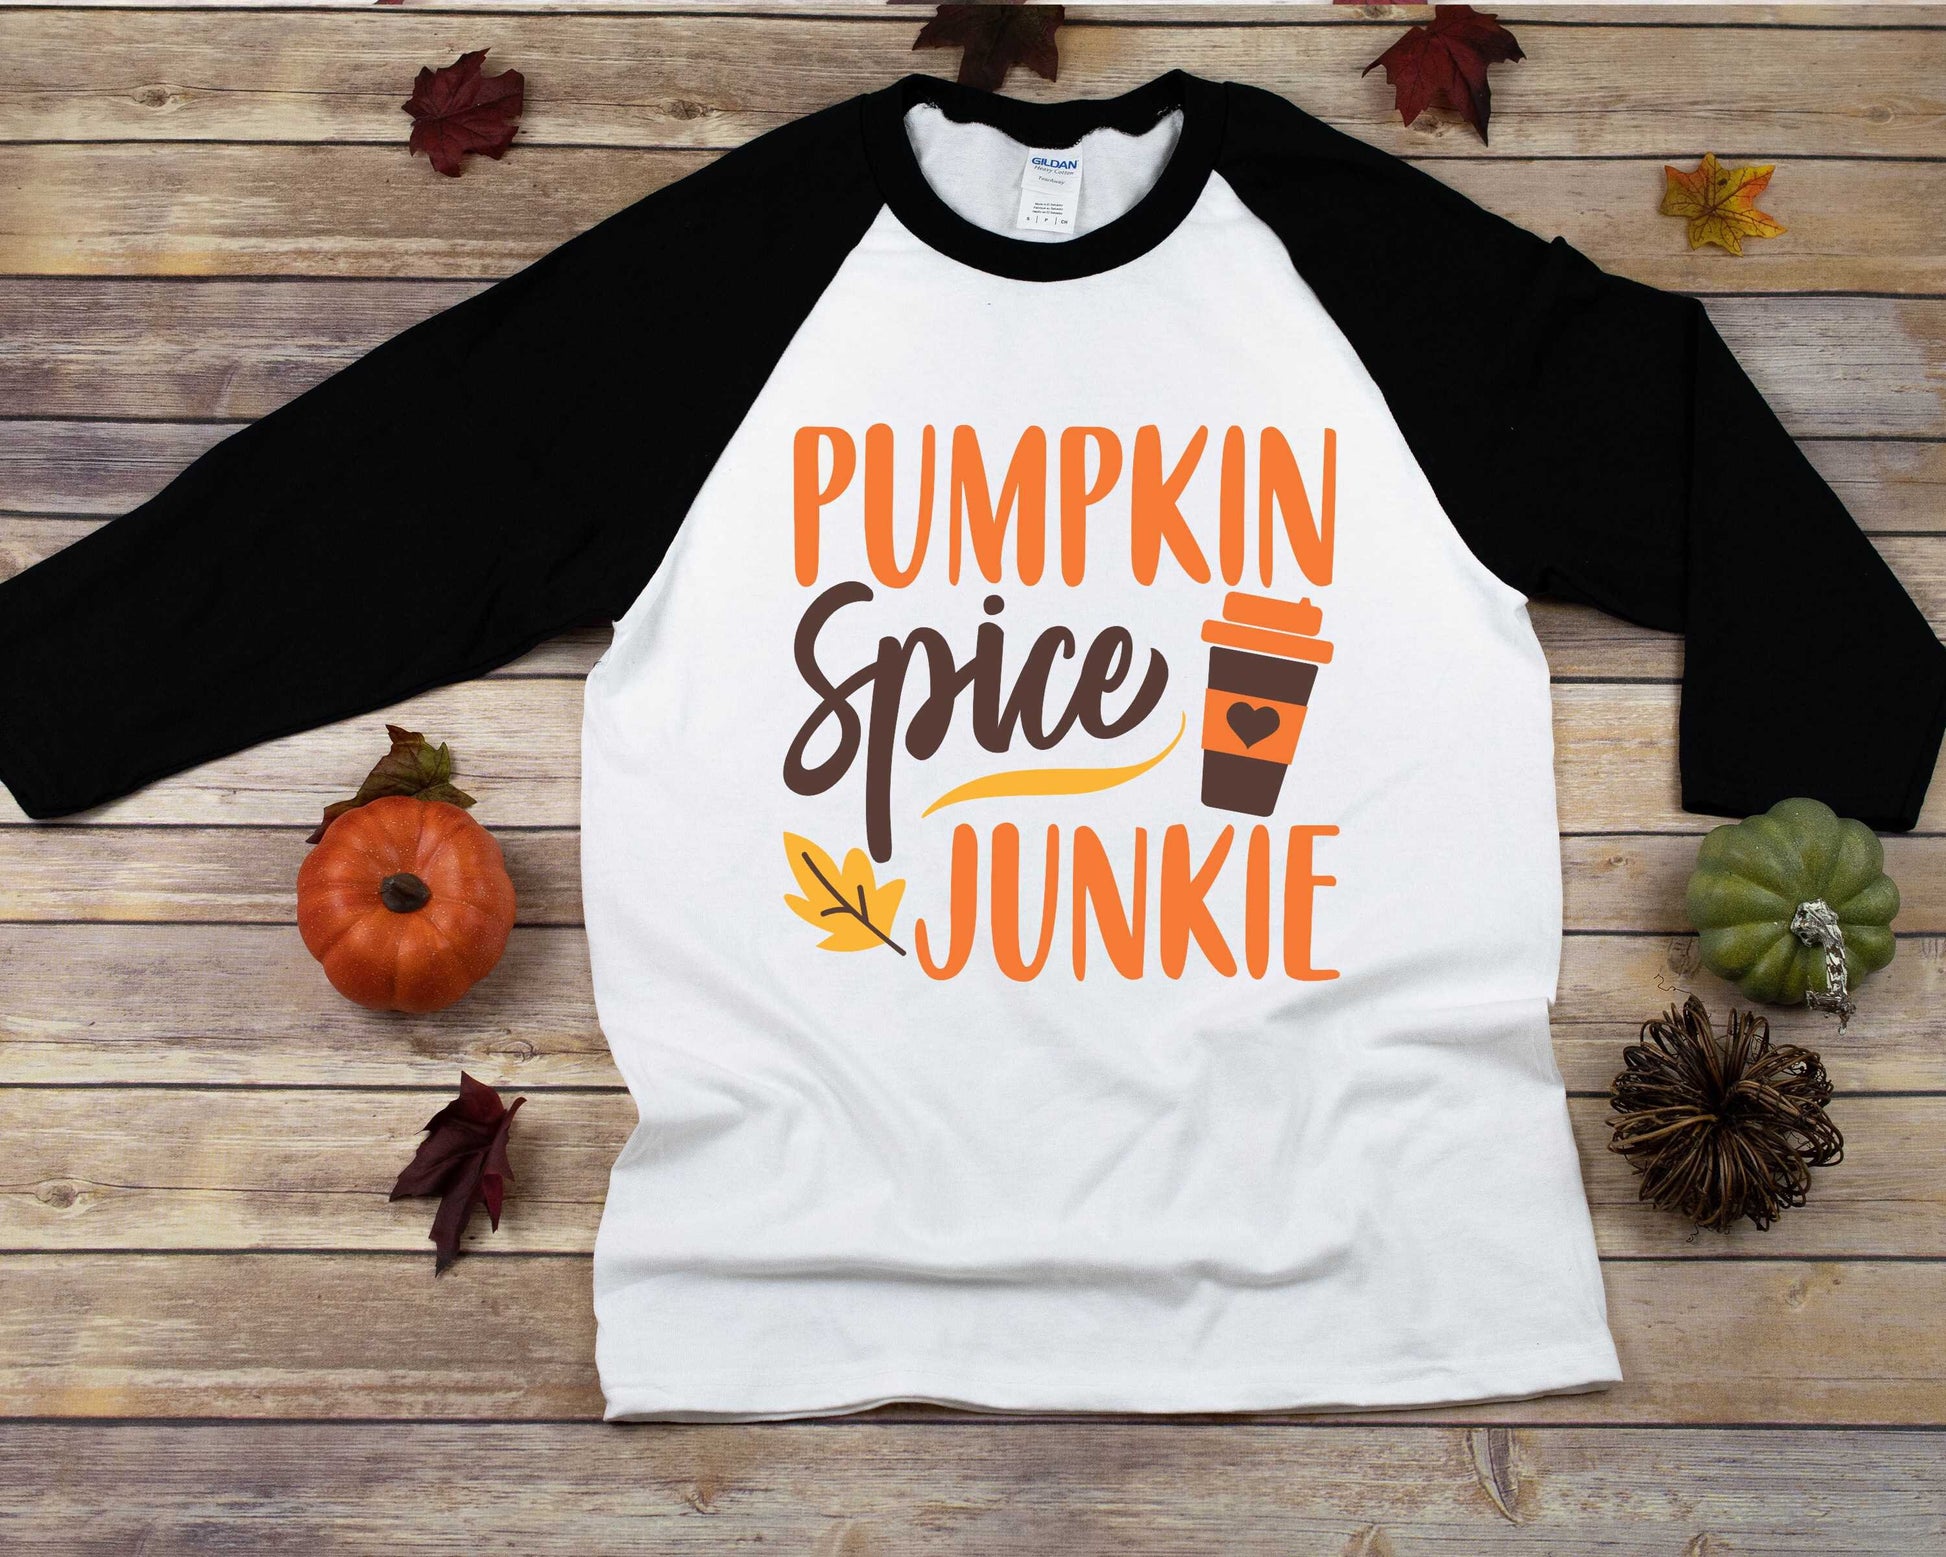 Pumpkin Spice Junkie Women's raglan t-shirt - pumpkin spice shirt - womens fall shirt - autumn shirt - fall shirt - pumpkin tee